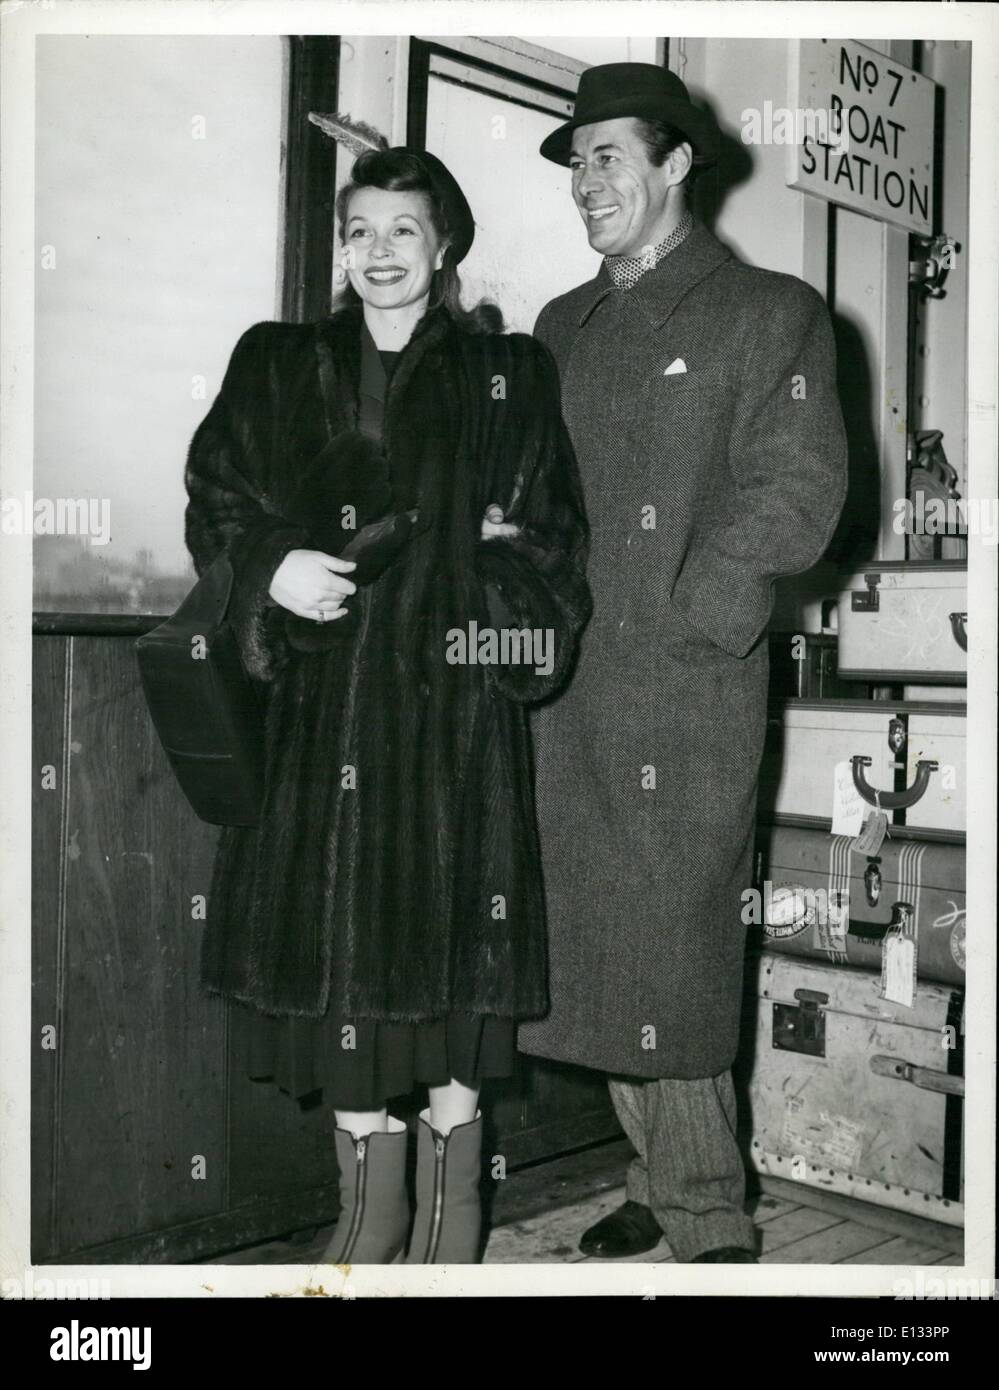 Le 26 février 2012 - étoiles britannique arrive : New York - Rex Harrison et sa femme, Lilli Palmer, la star de cinéma à leur arrivée le paquebot Queen Elizabeth. La nis Harrison photo ''Escape'' en Grande-Bretagne. Banque D'Images